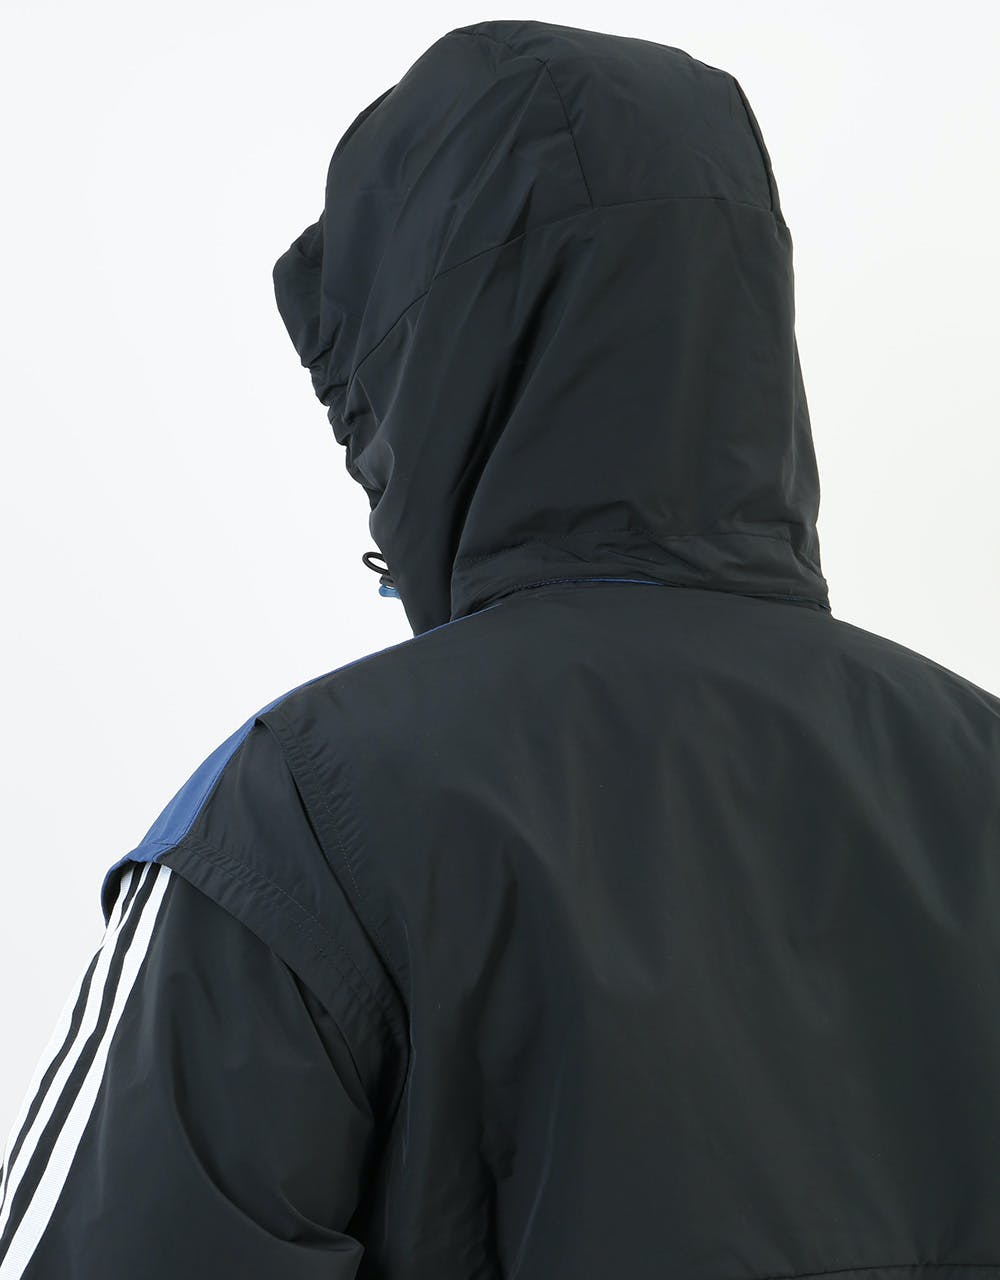 Adidas Blackrock Jacket - Black/Tech Indigo